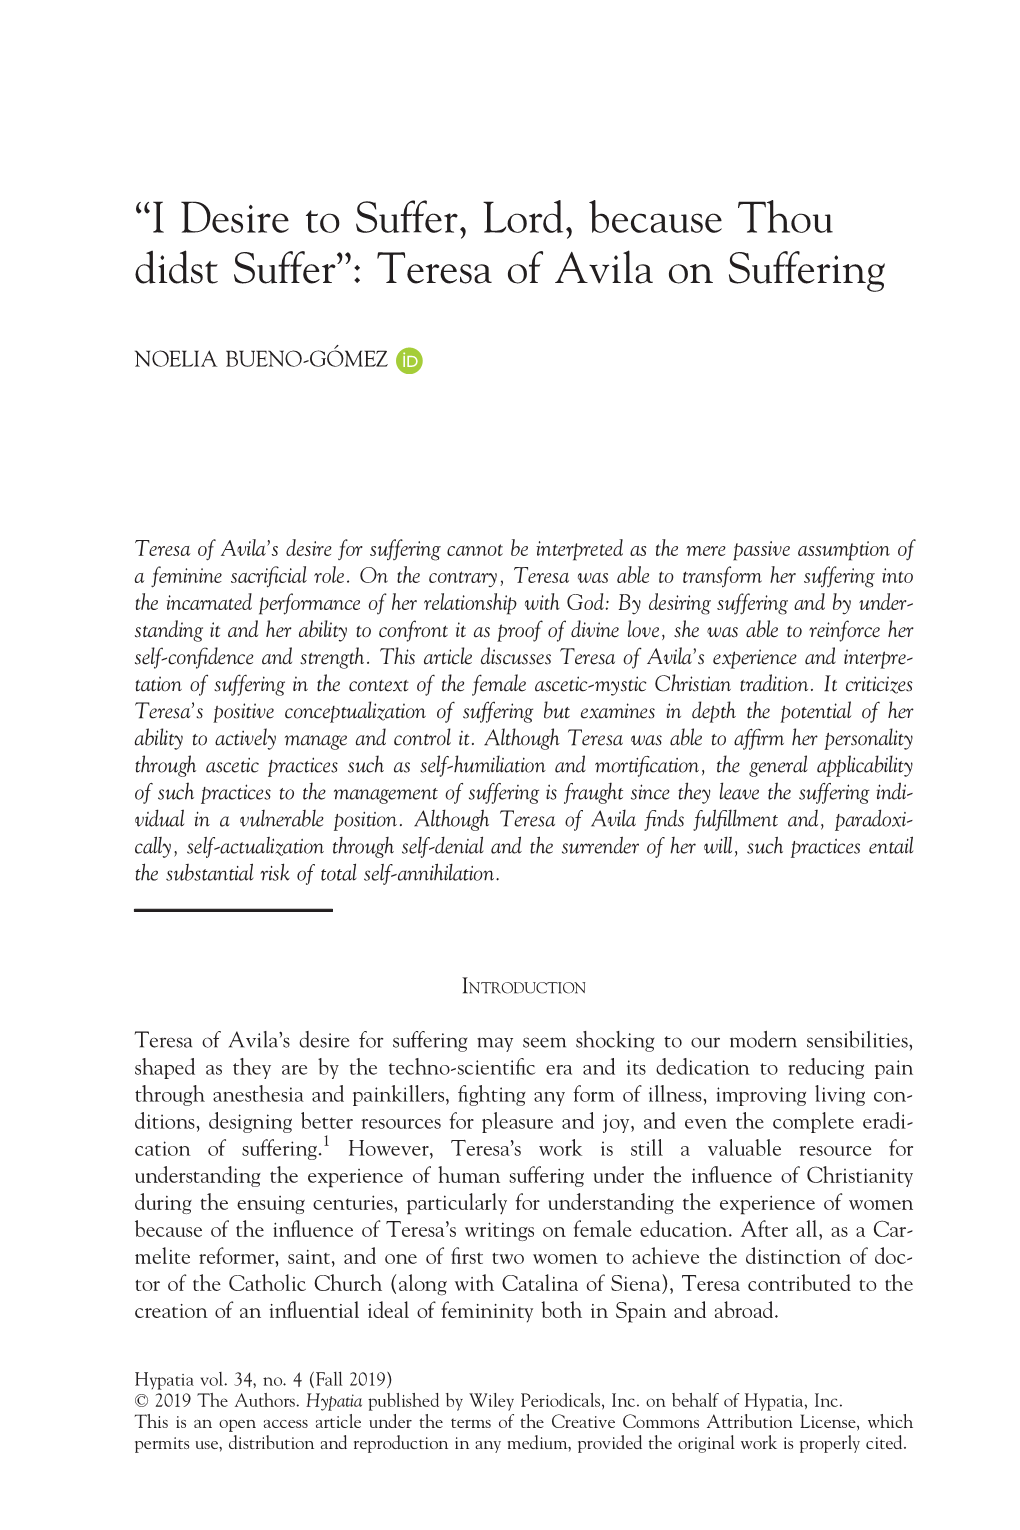 Teresa of Avila on Suffering